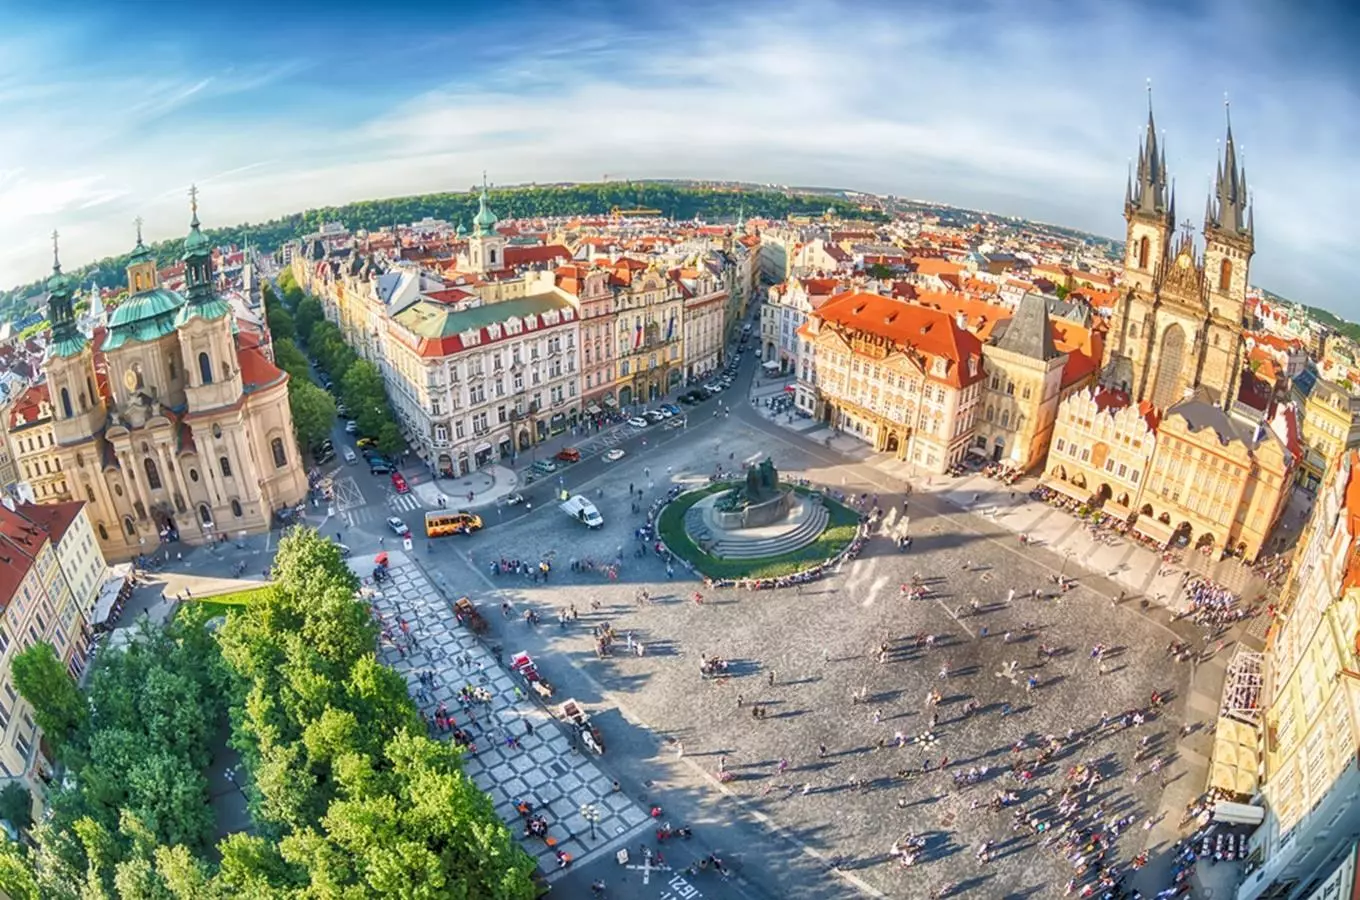 Vycházkové trasy v Praze